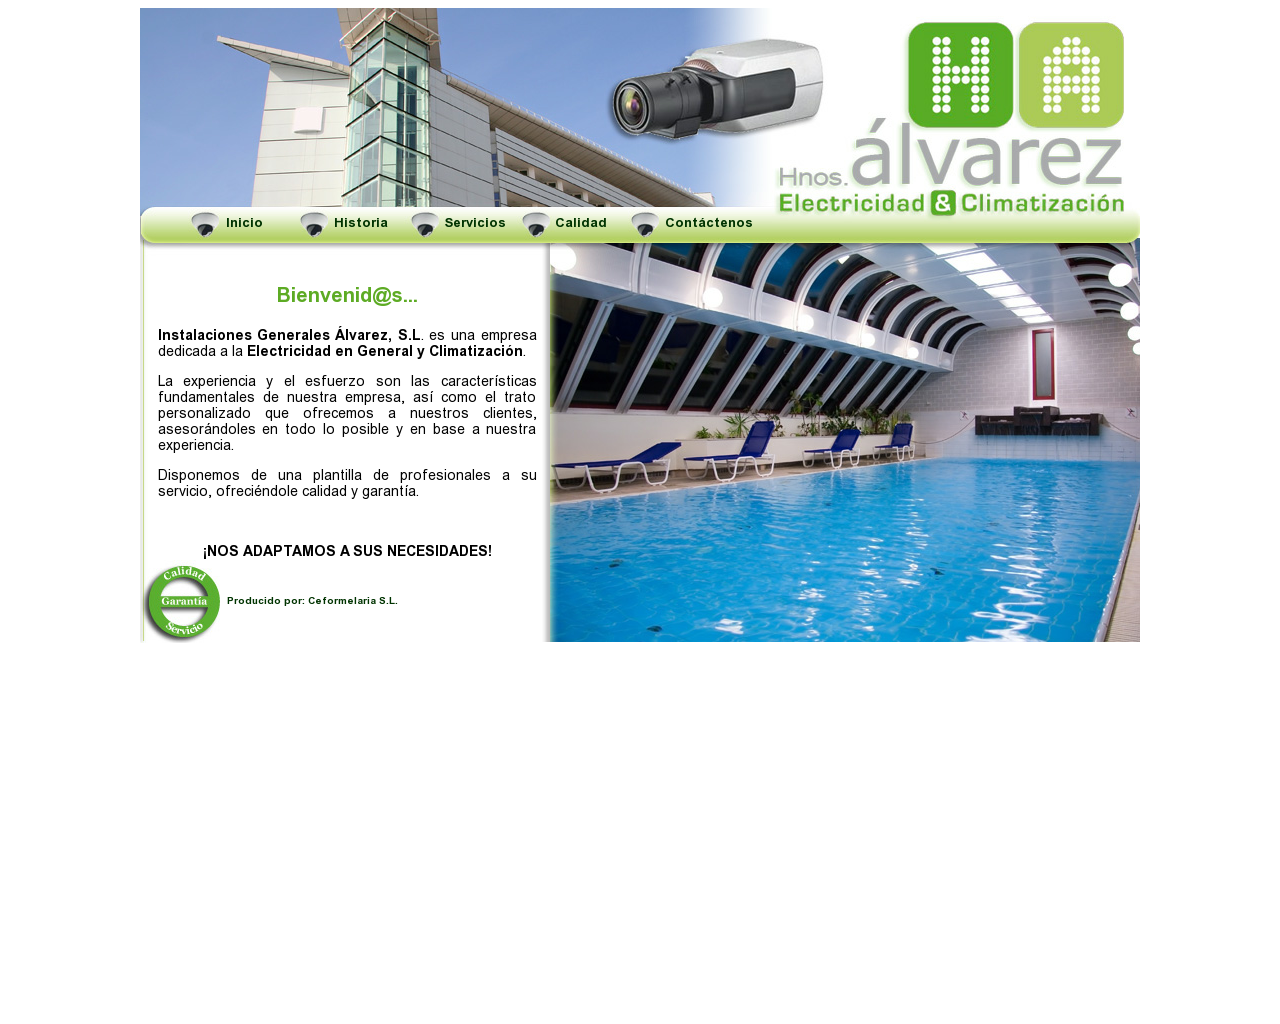 El sitio de la imagen h-alvarez.es en 1280x1024